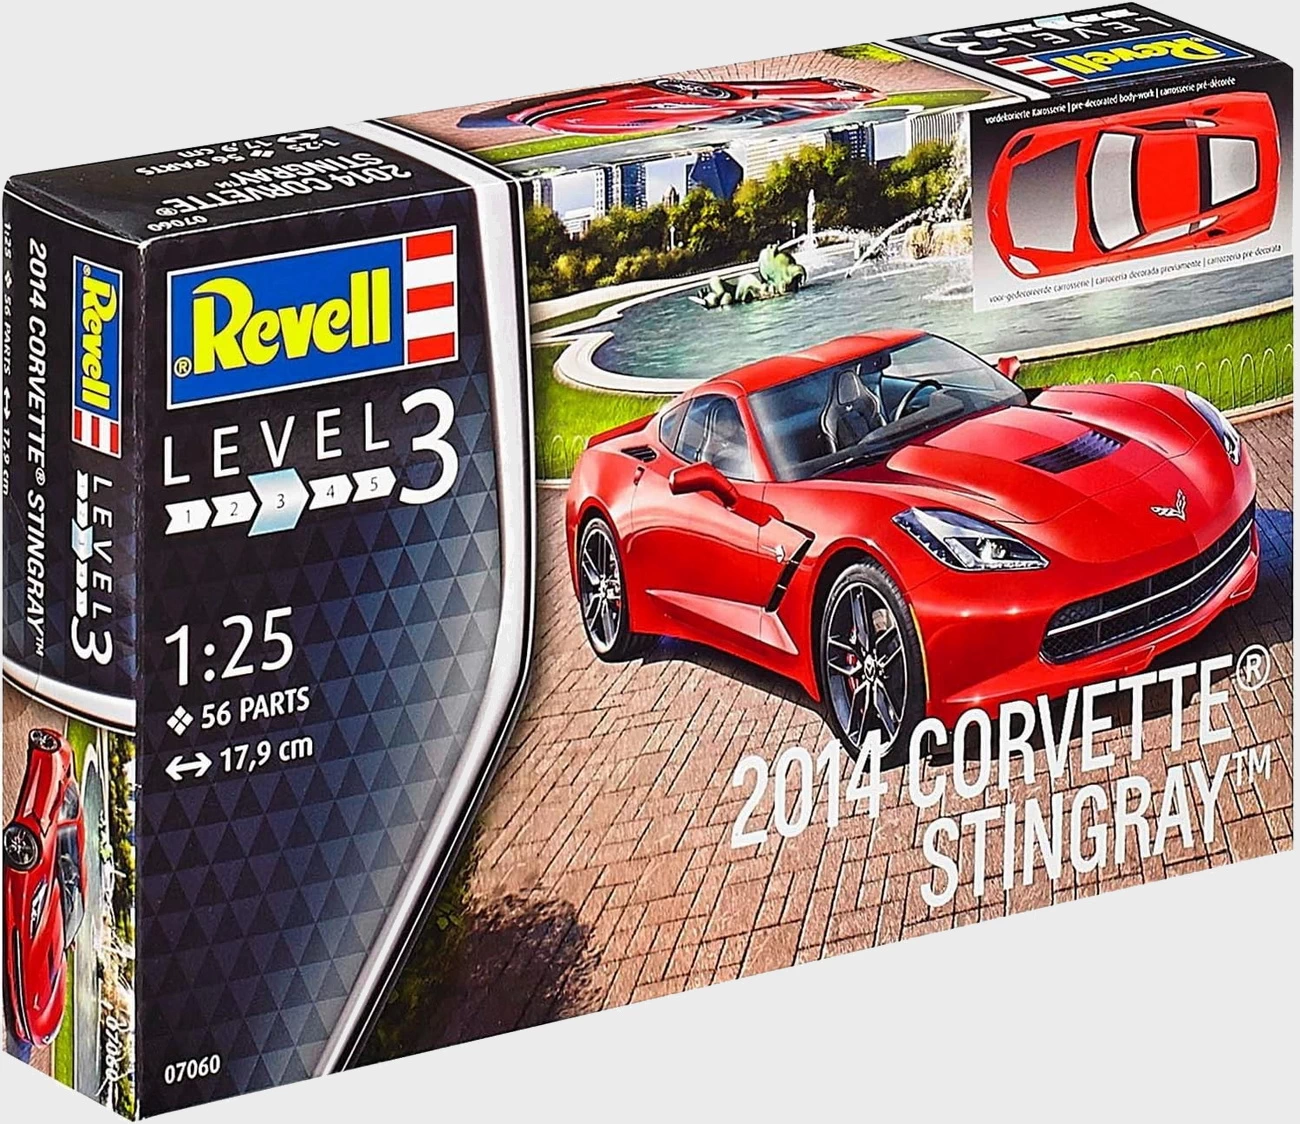 Revell 07060 - 2014 CORVETTE STINGRAY